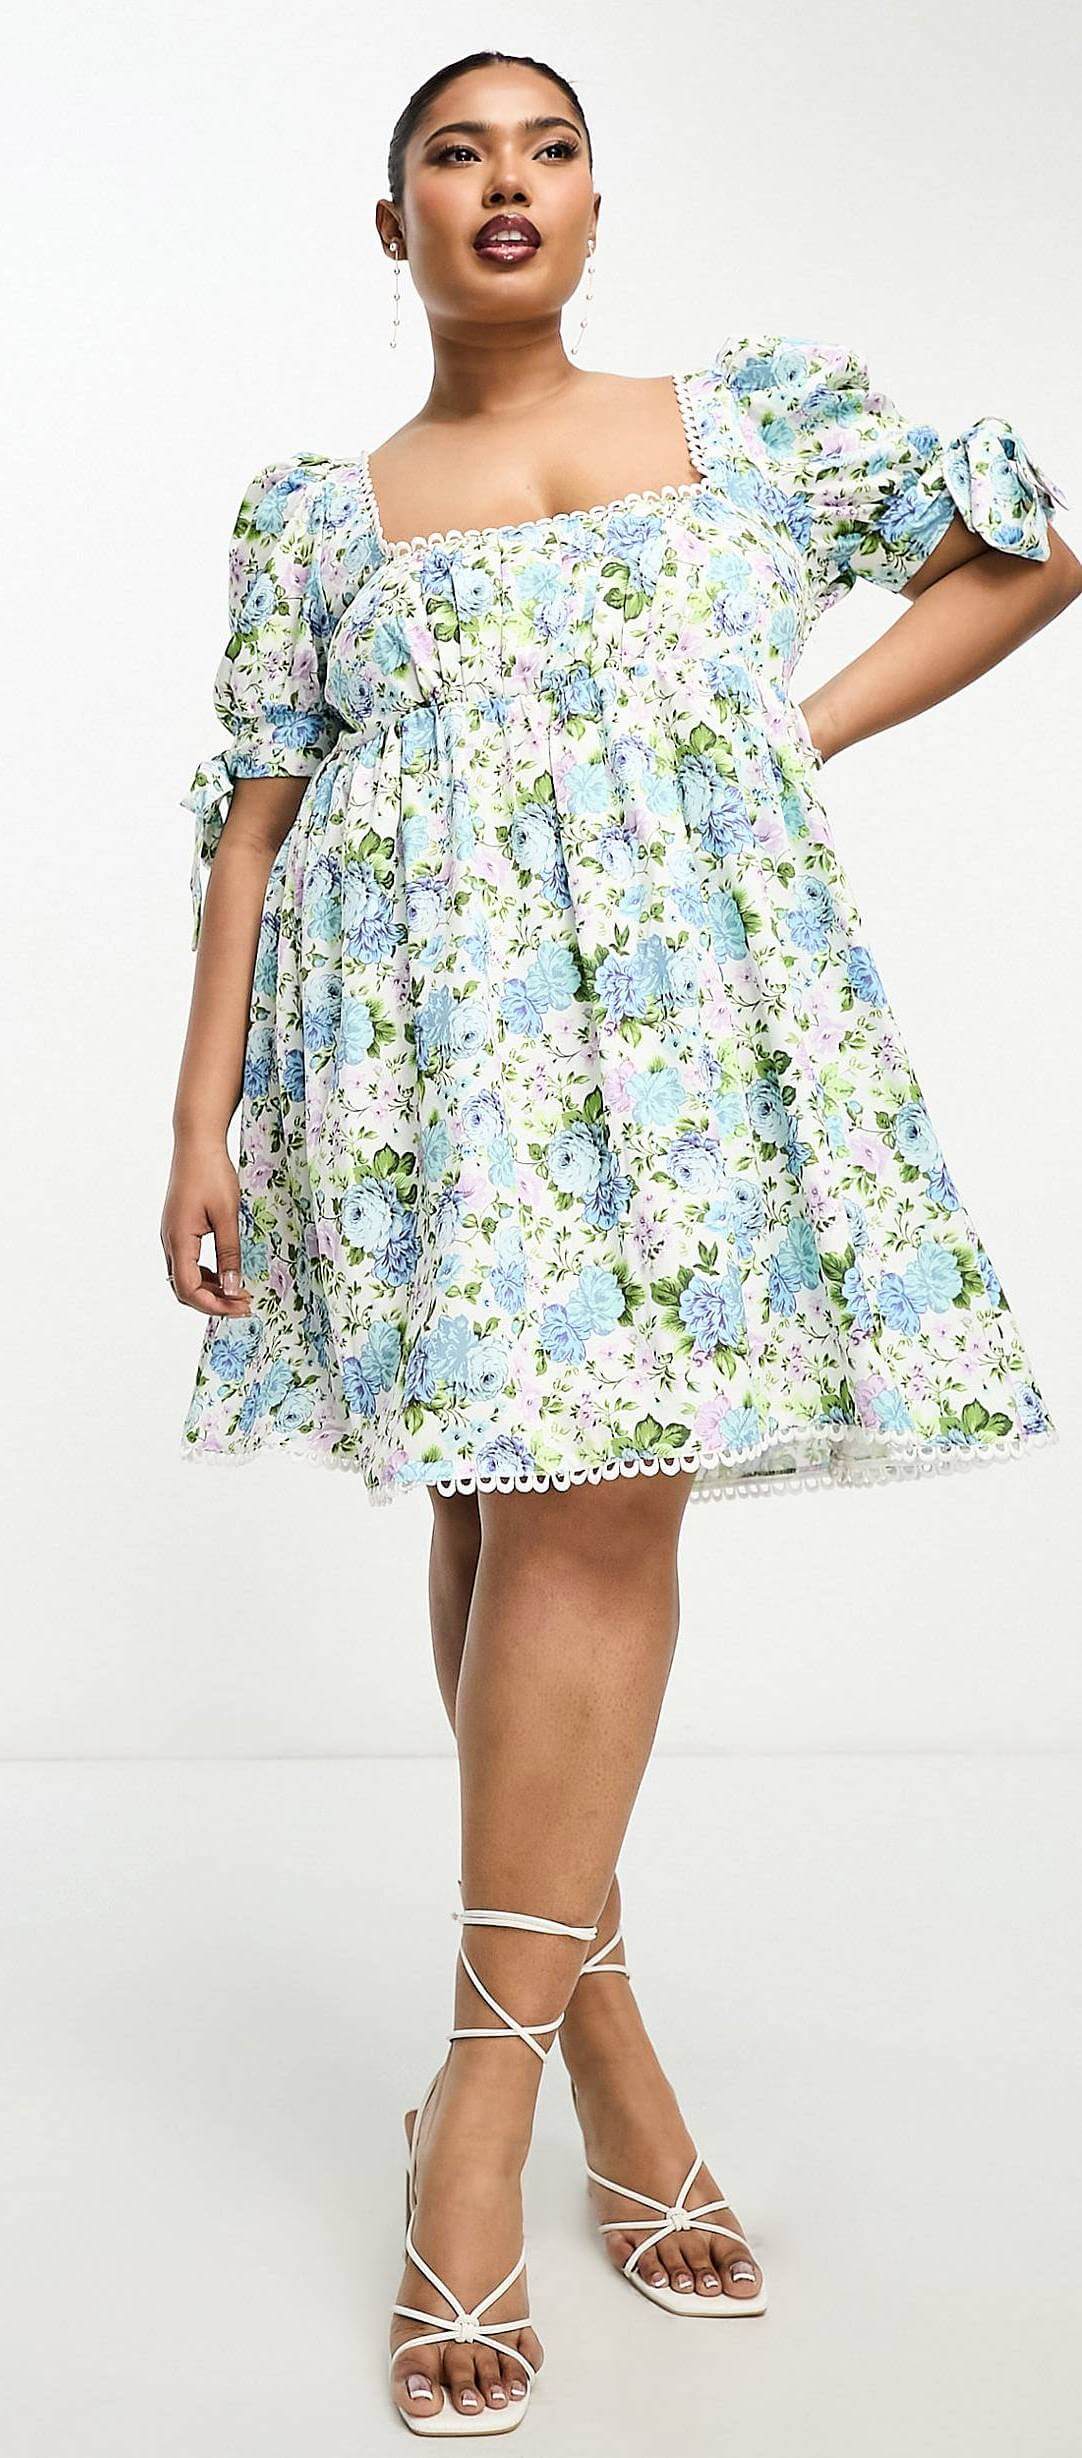 Мини-платье с пышными рукавами и цветочным орнаментом The Frolic Plus Edge, белый/голубой/зеленый цена и фото